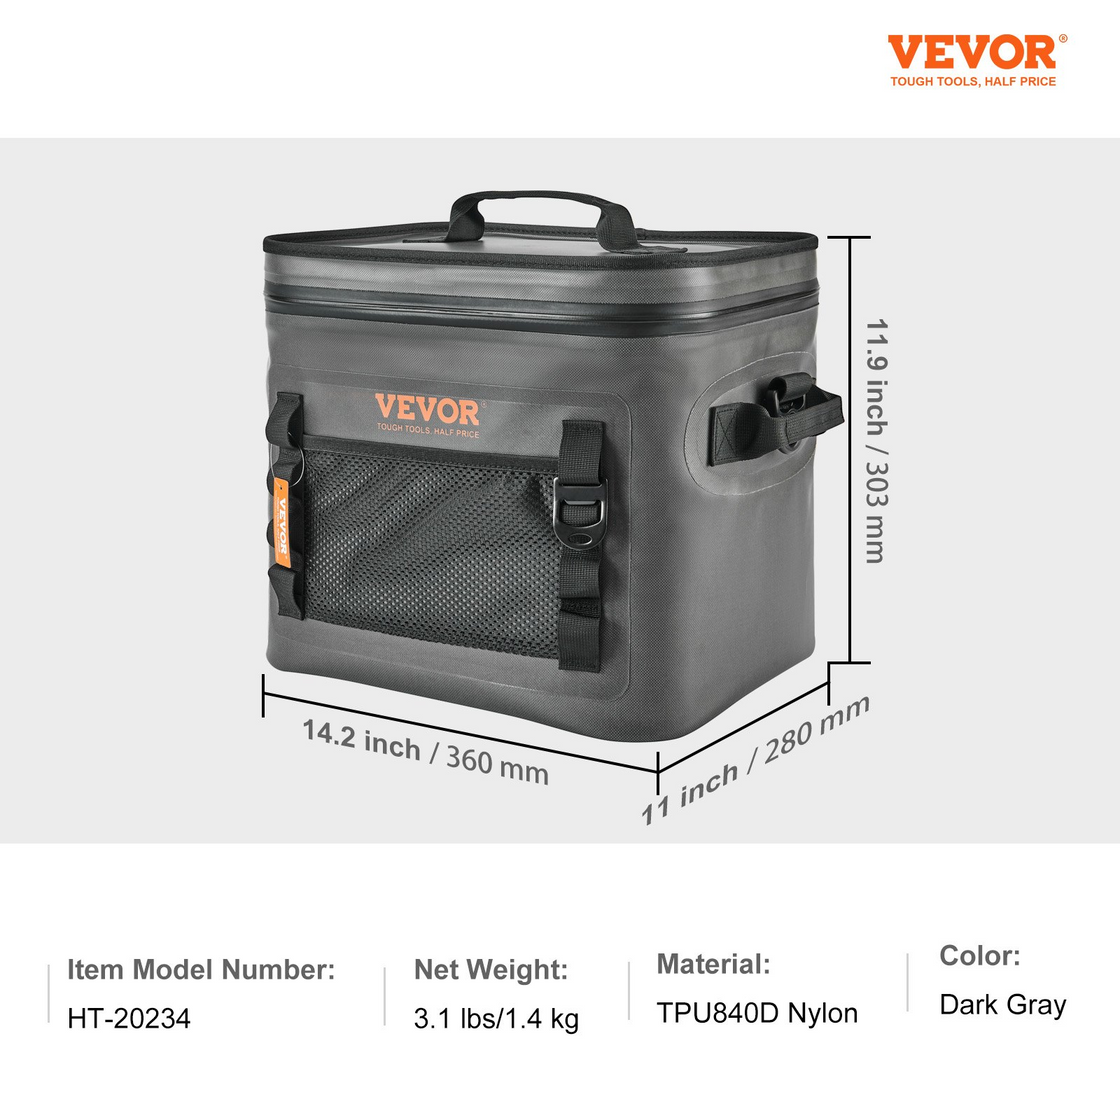 VEVOR Soft Cooler Bag - Leakproof & Waterproof Insulated Cooler for Outdoor Activities